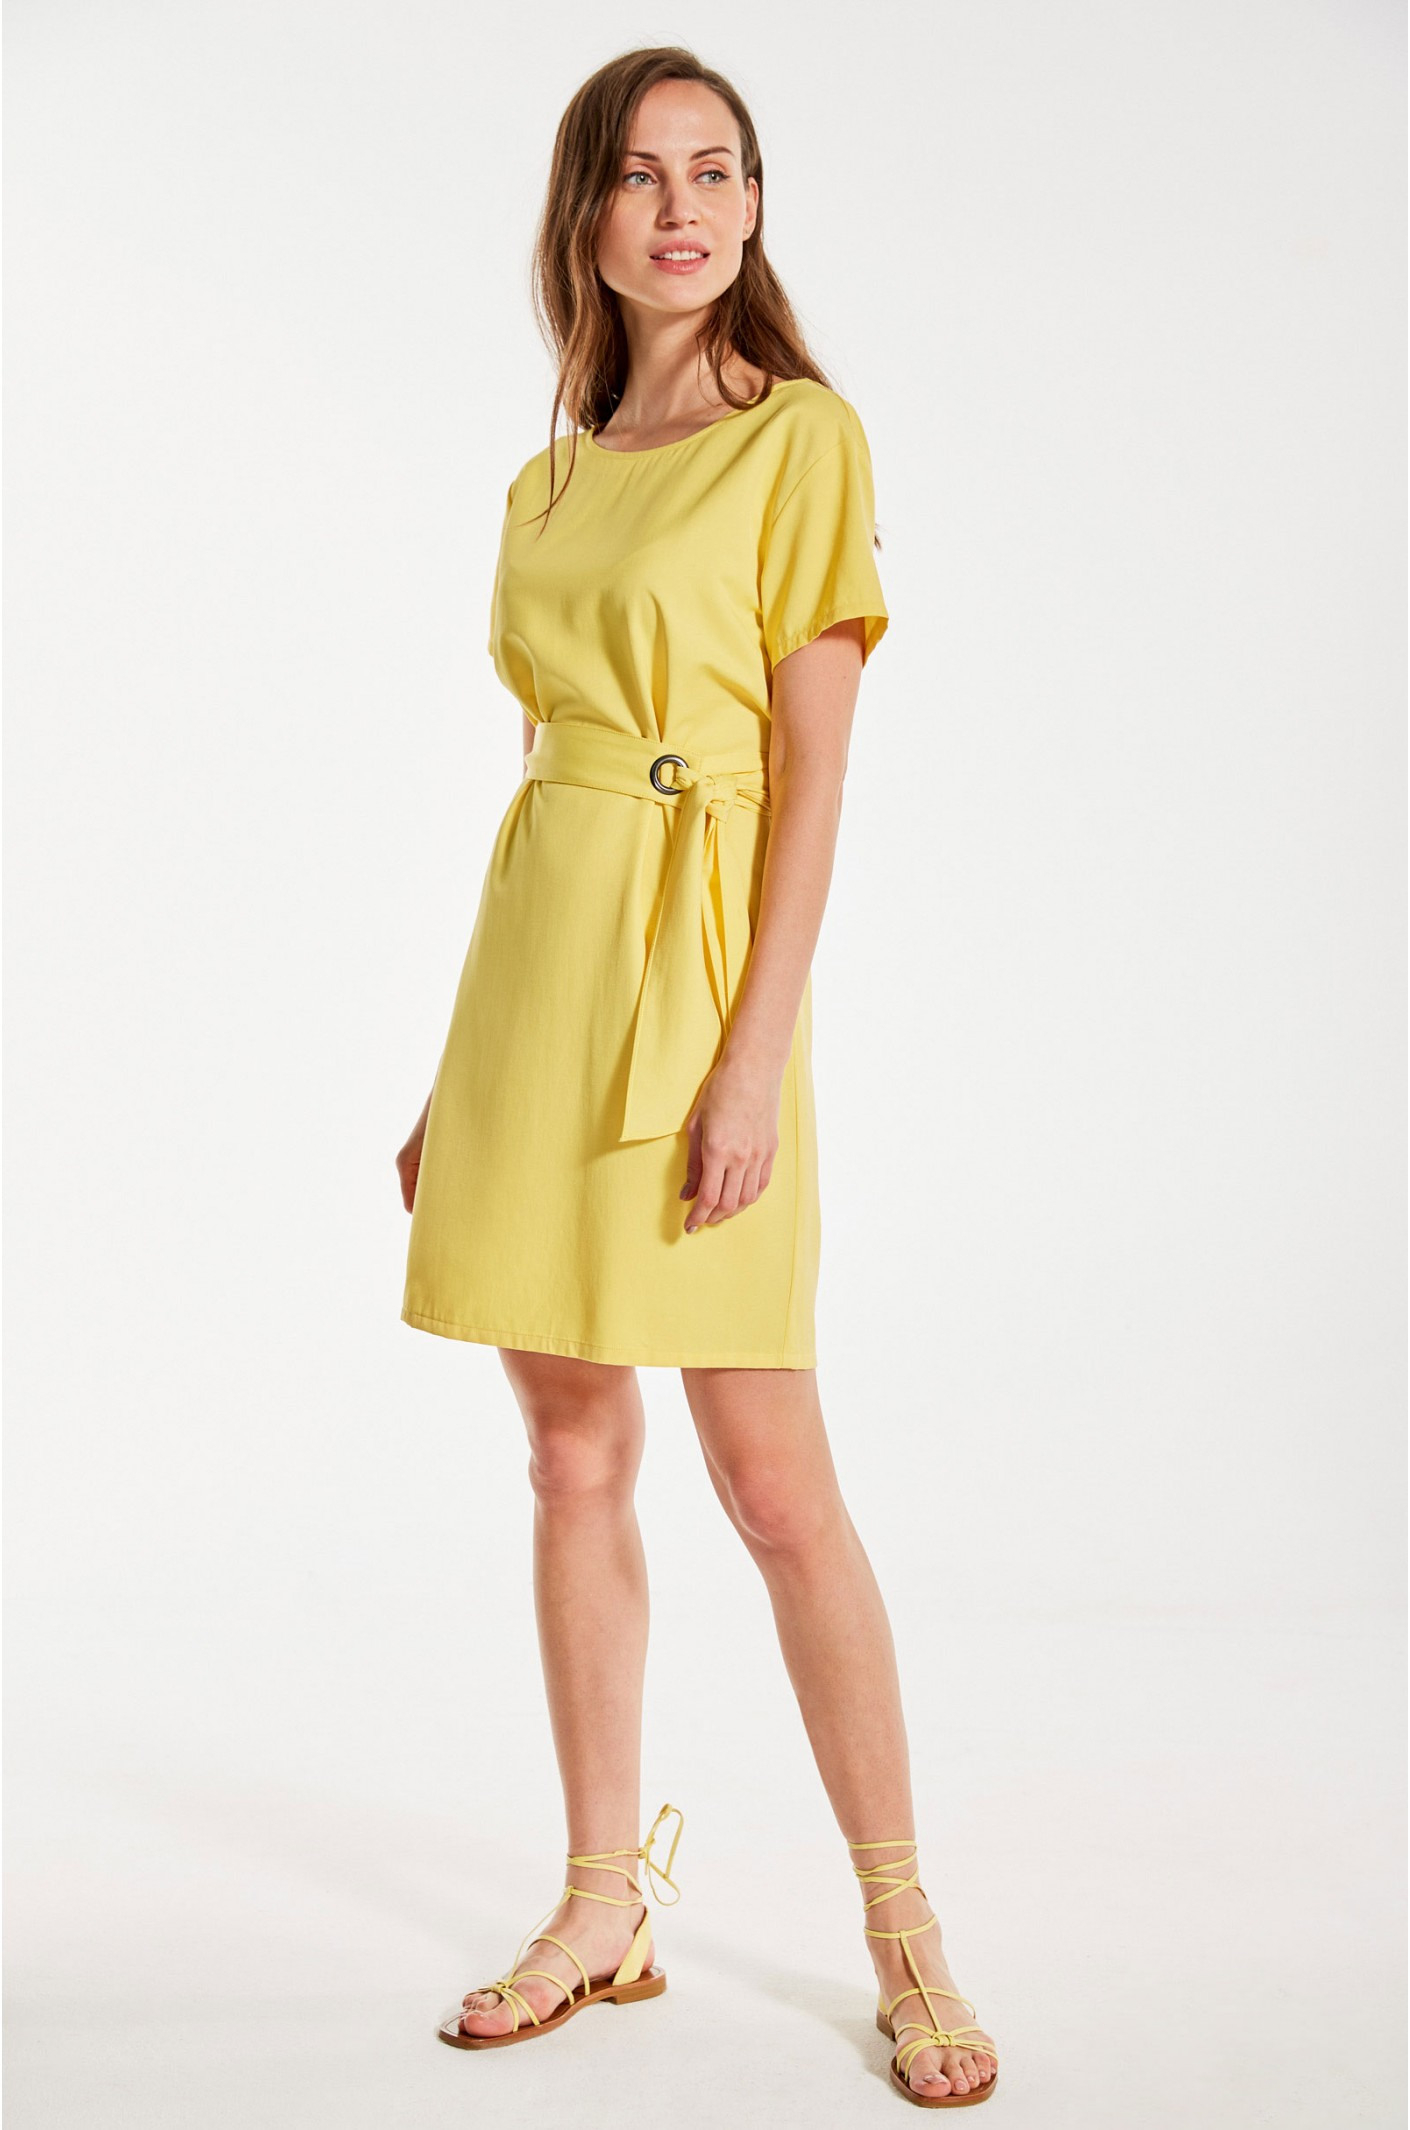 Kleid In Gelb Mit Kurzem Arm Und Mit Gürtel  Kala Fashion